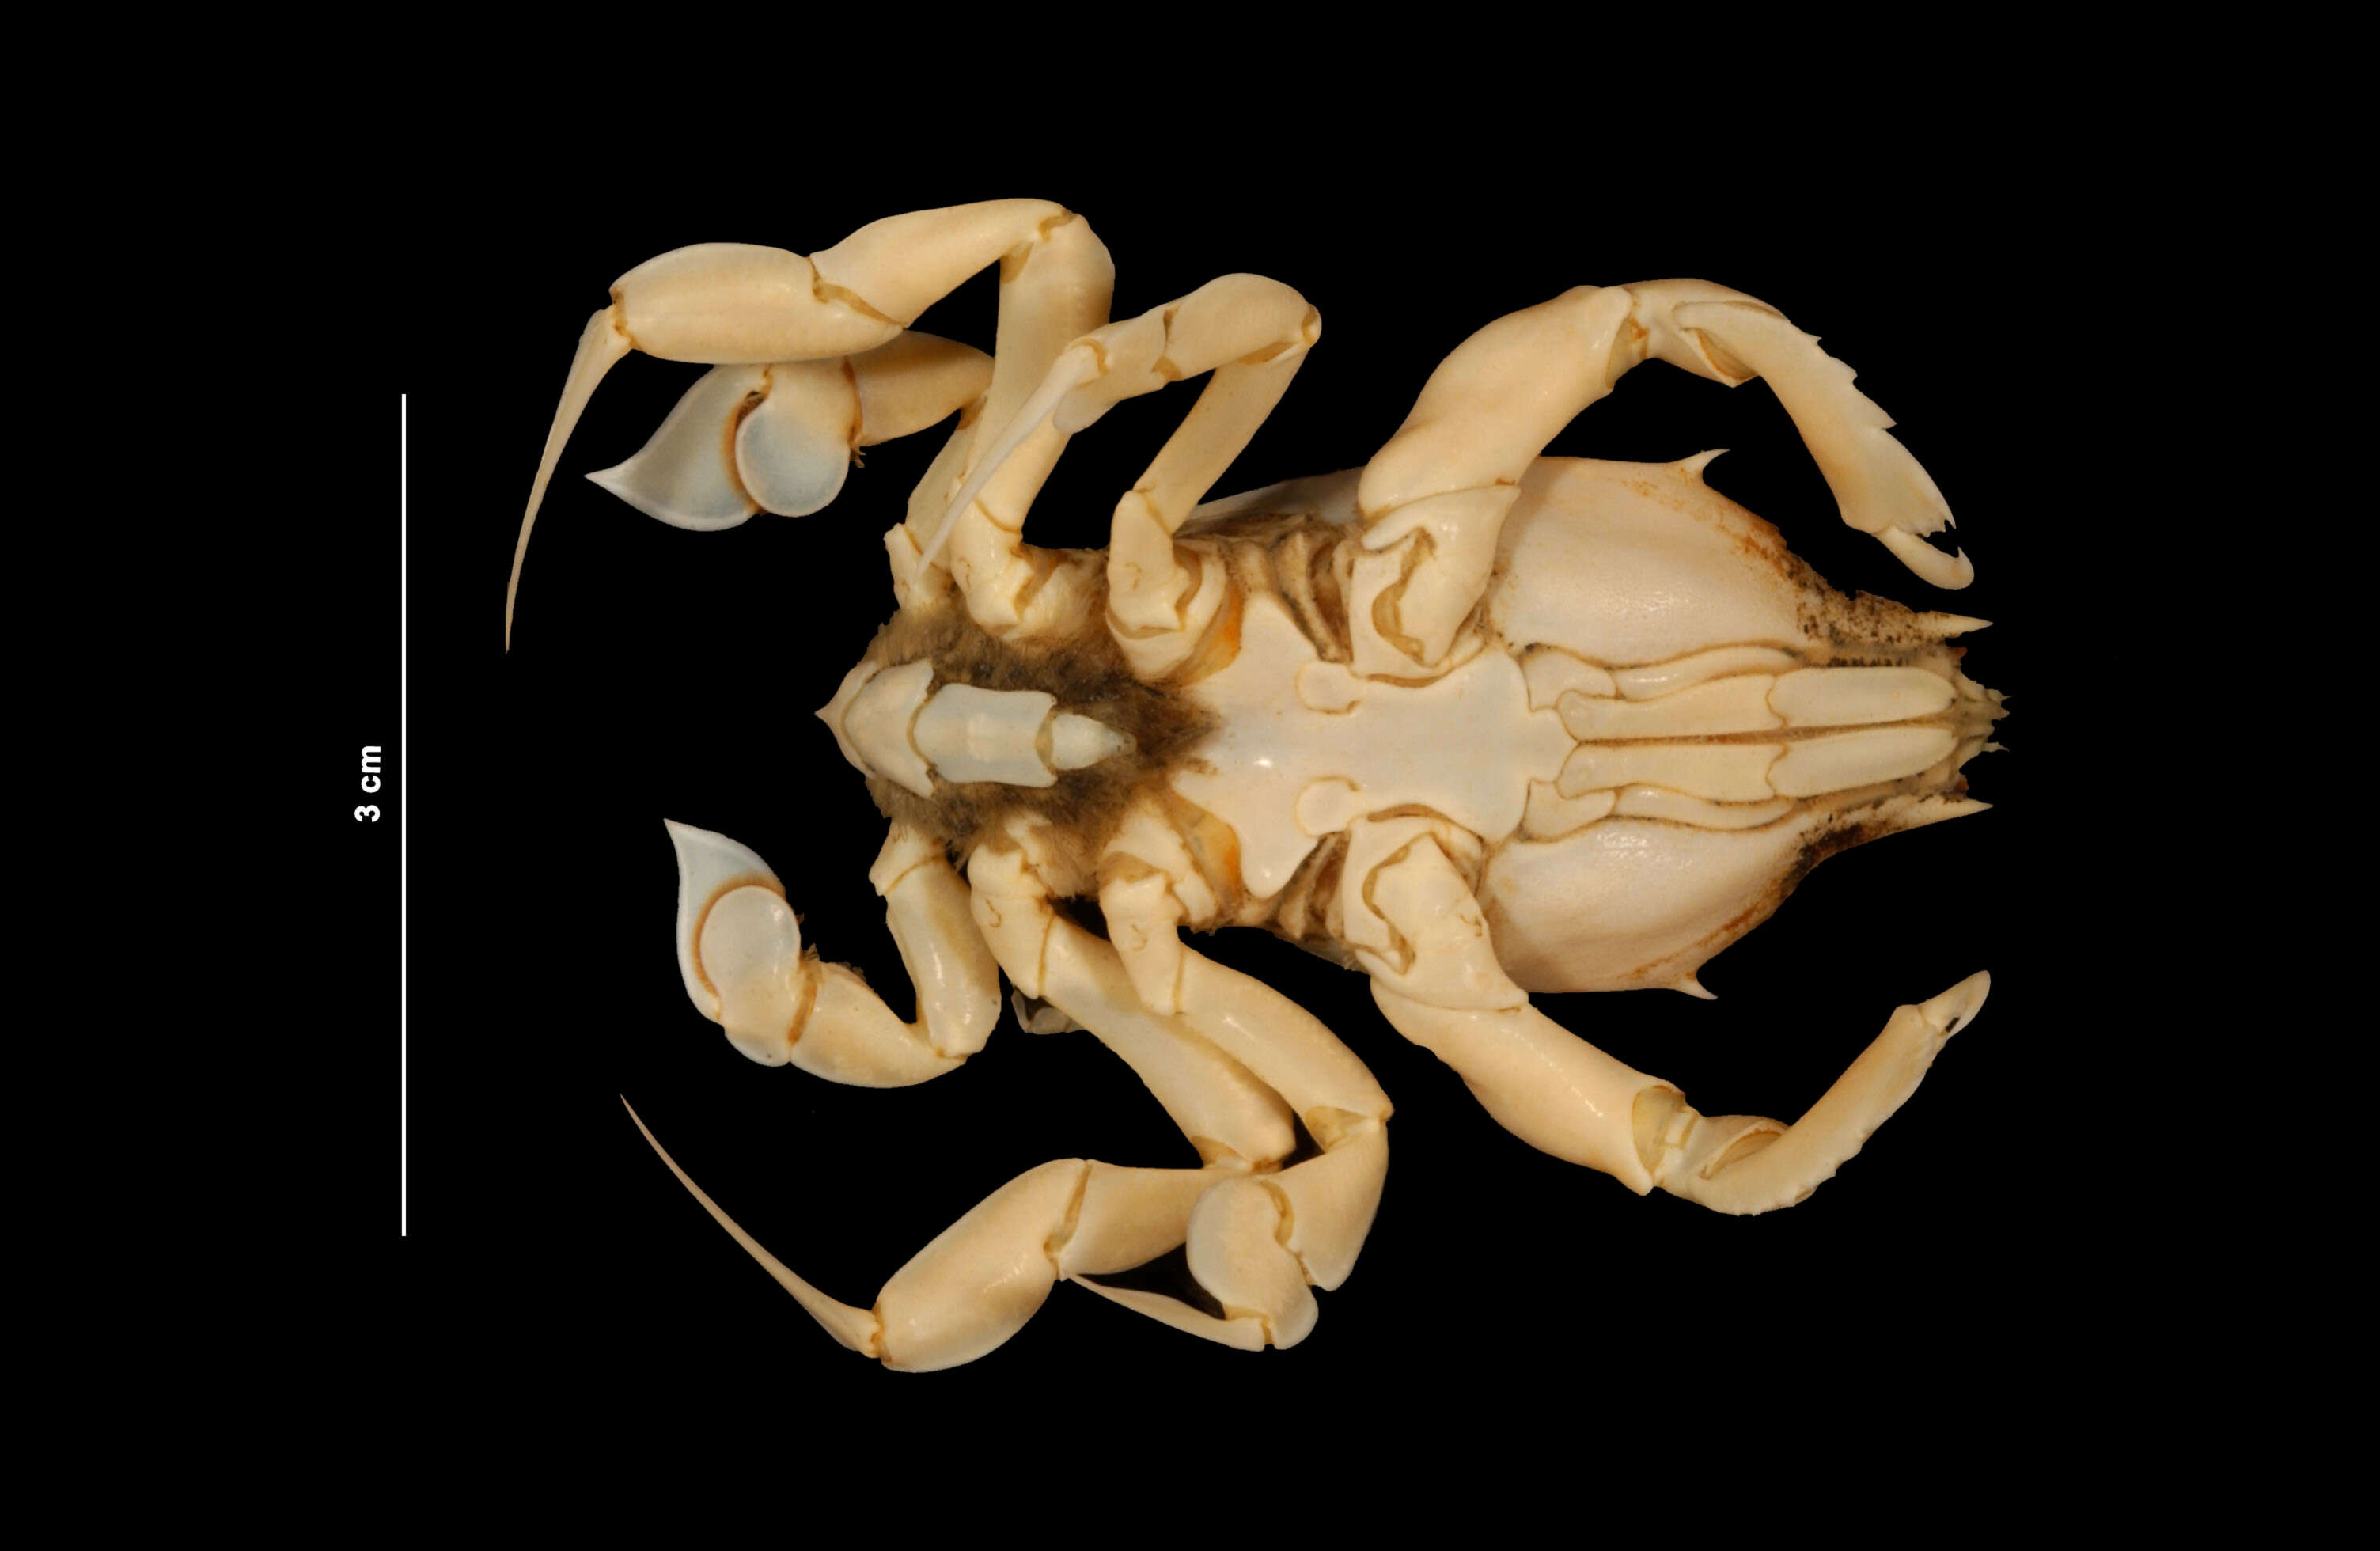 Image of longleg frog crab